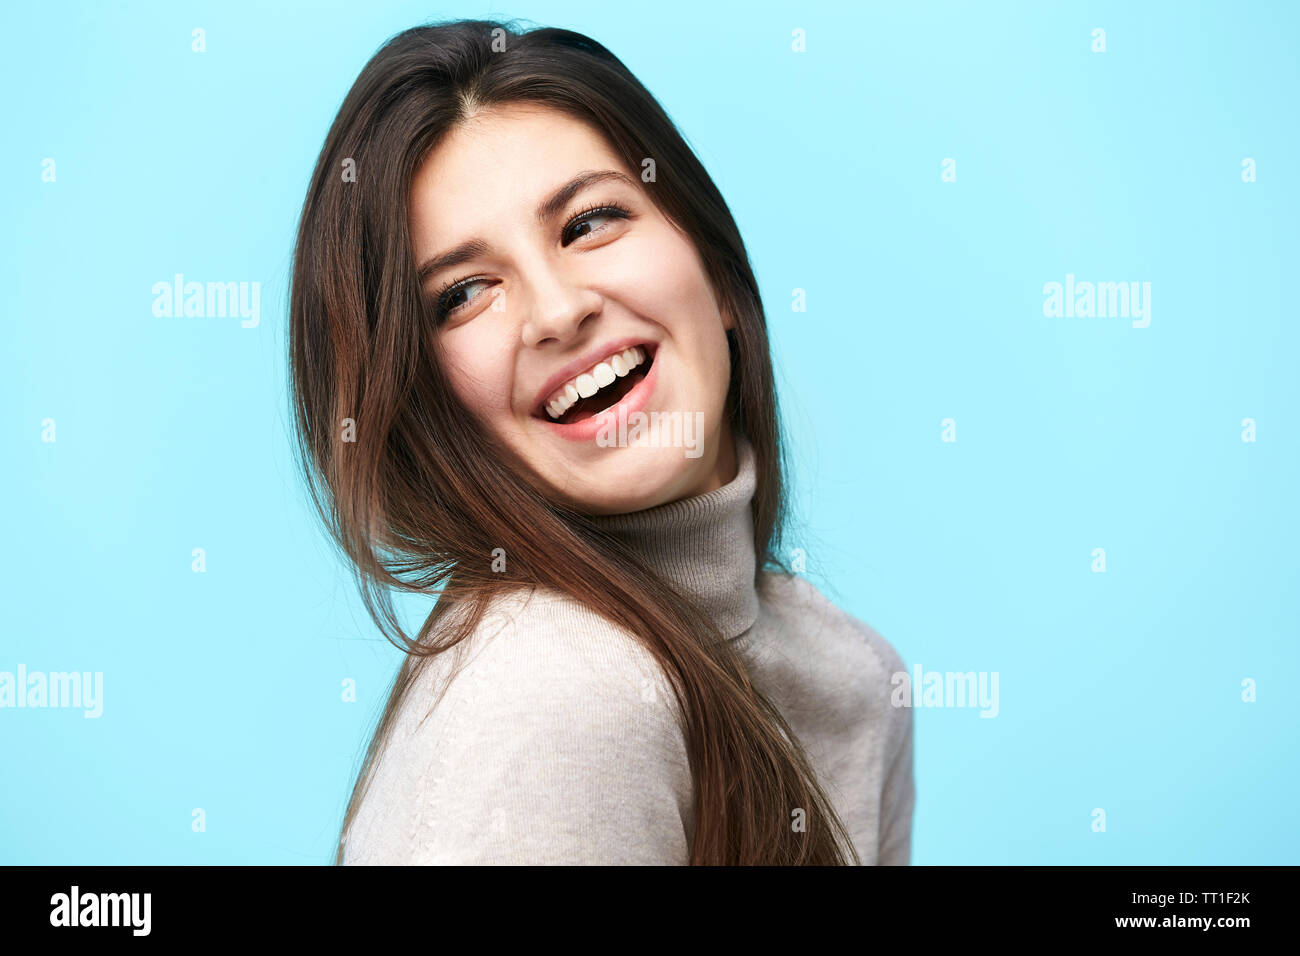 Portrait of a young woman with long hair, heureux et souriants, isolé sur fond bleu Banque D'Images